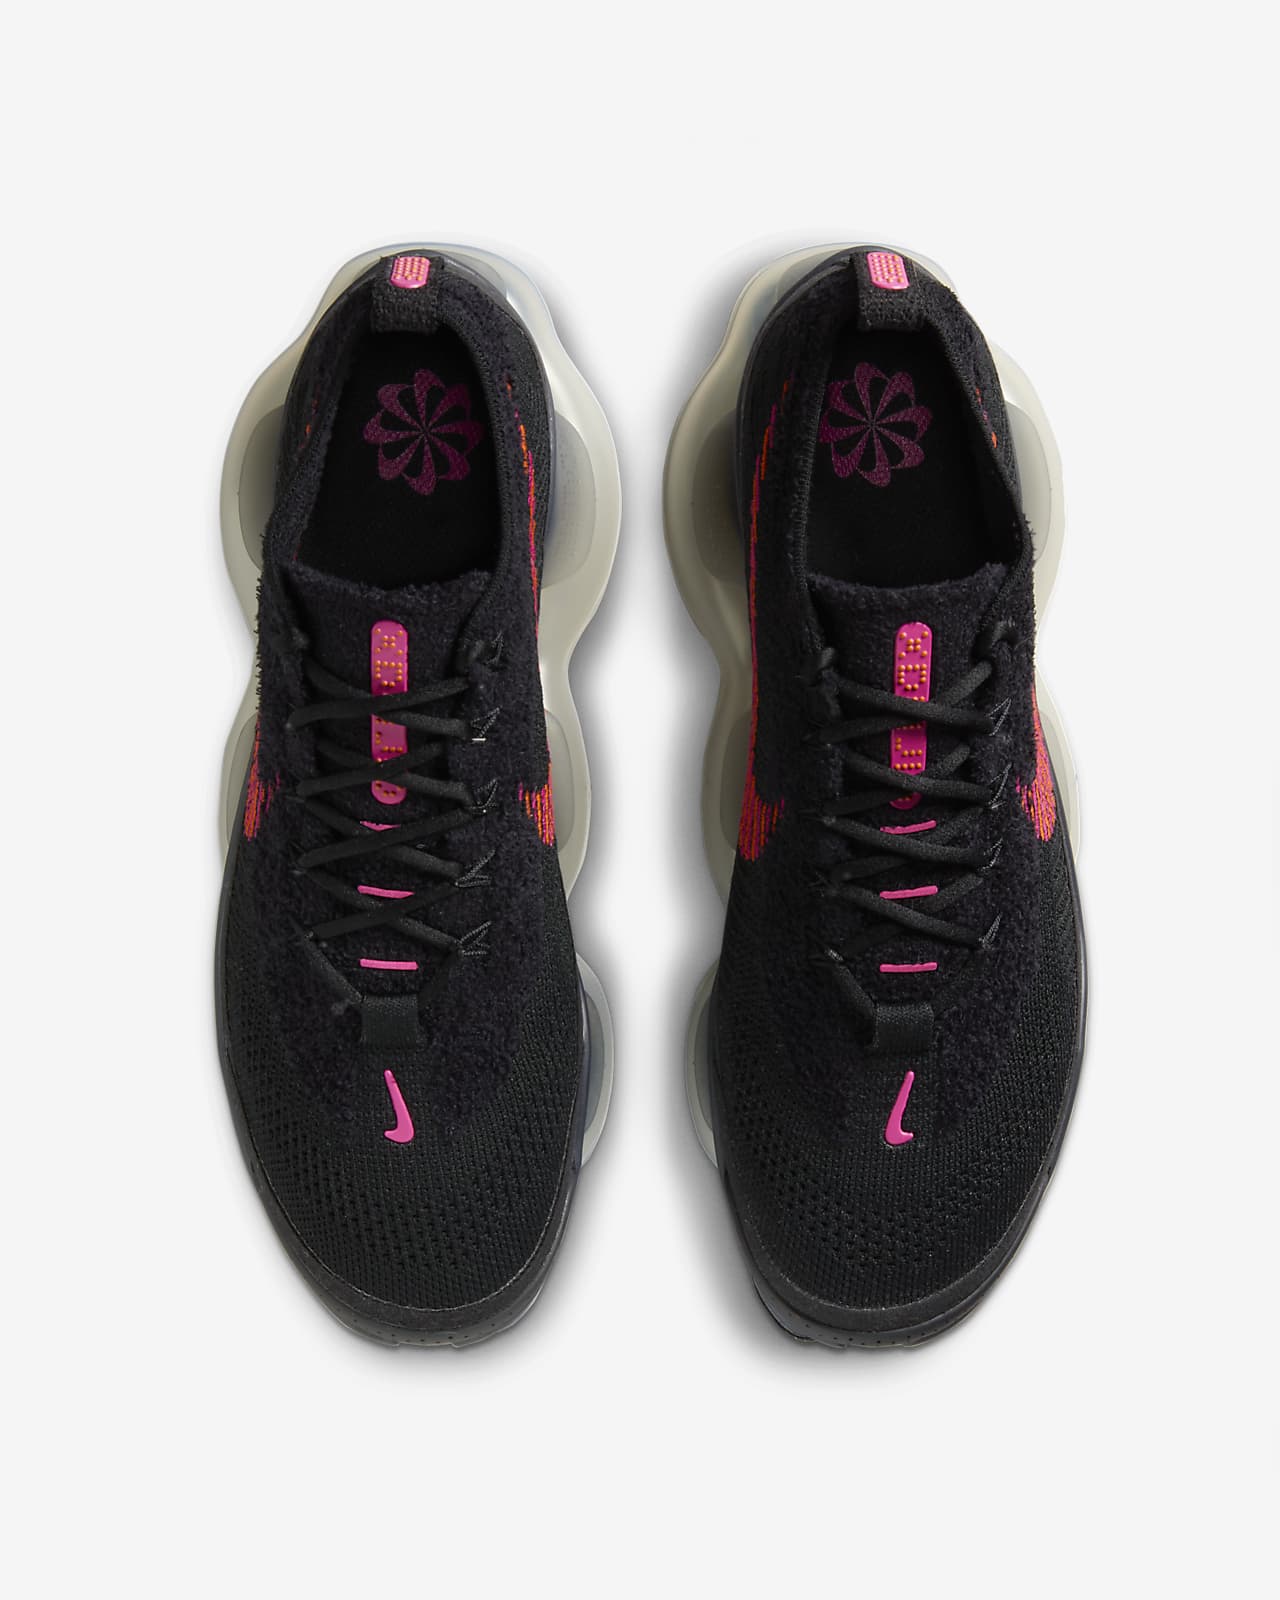 Nike Air Max Scorpion Flyknit Women's Shoes. Nike LU